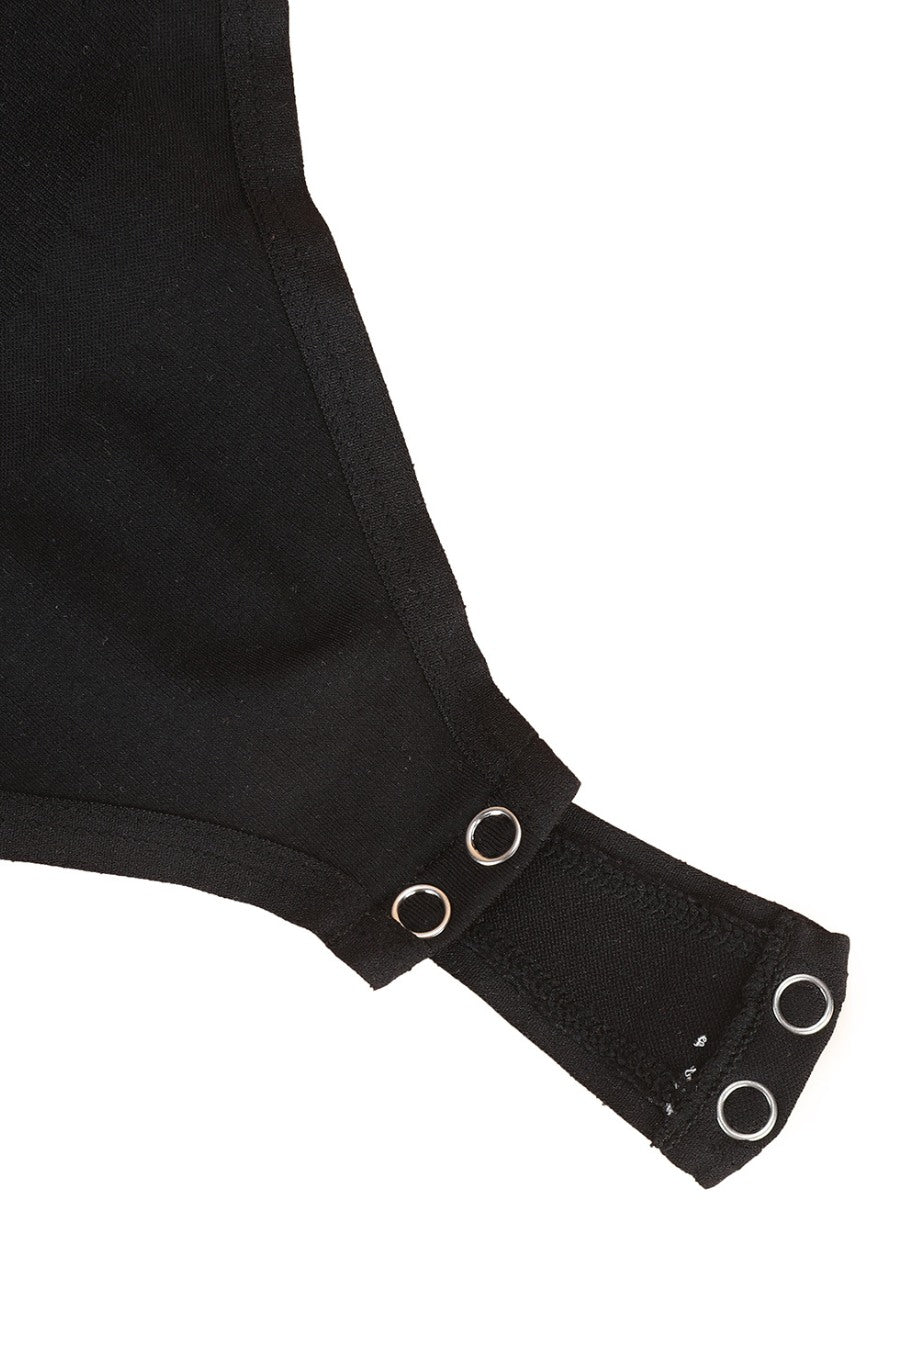 Mila Shaping Bodysuit - Black Eco Contour Clothing